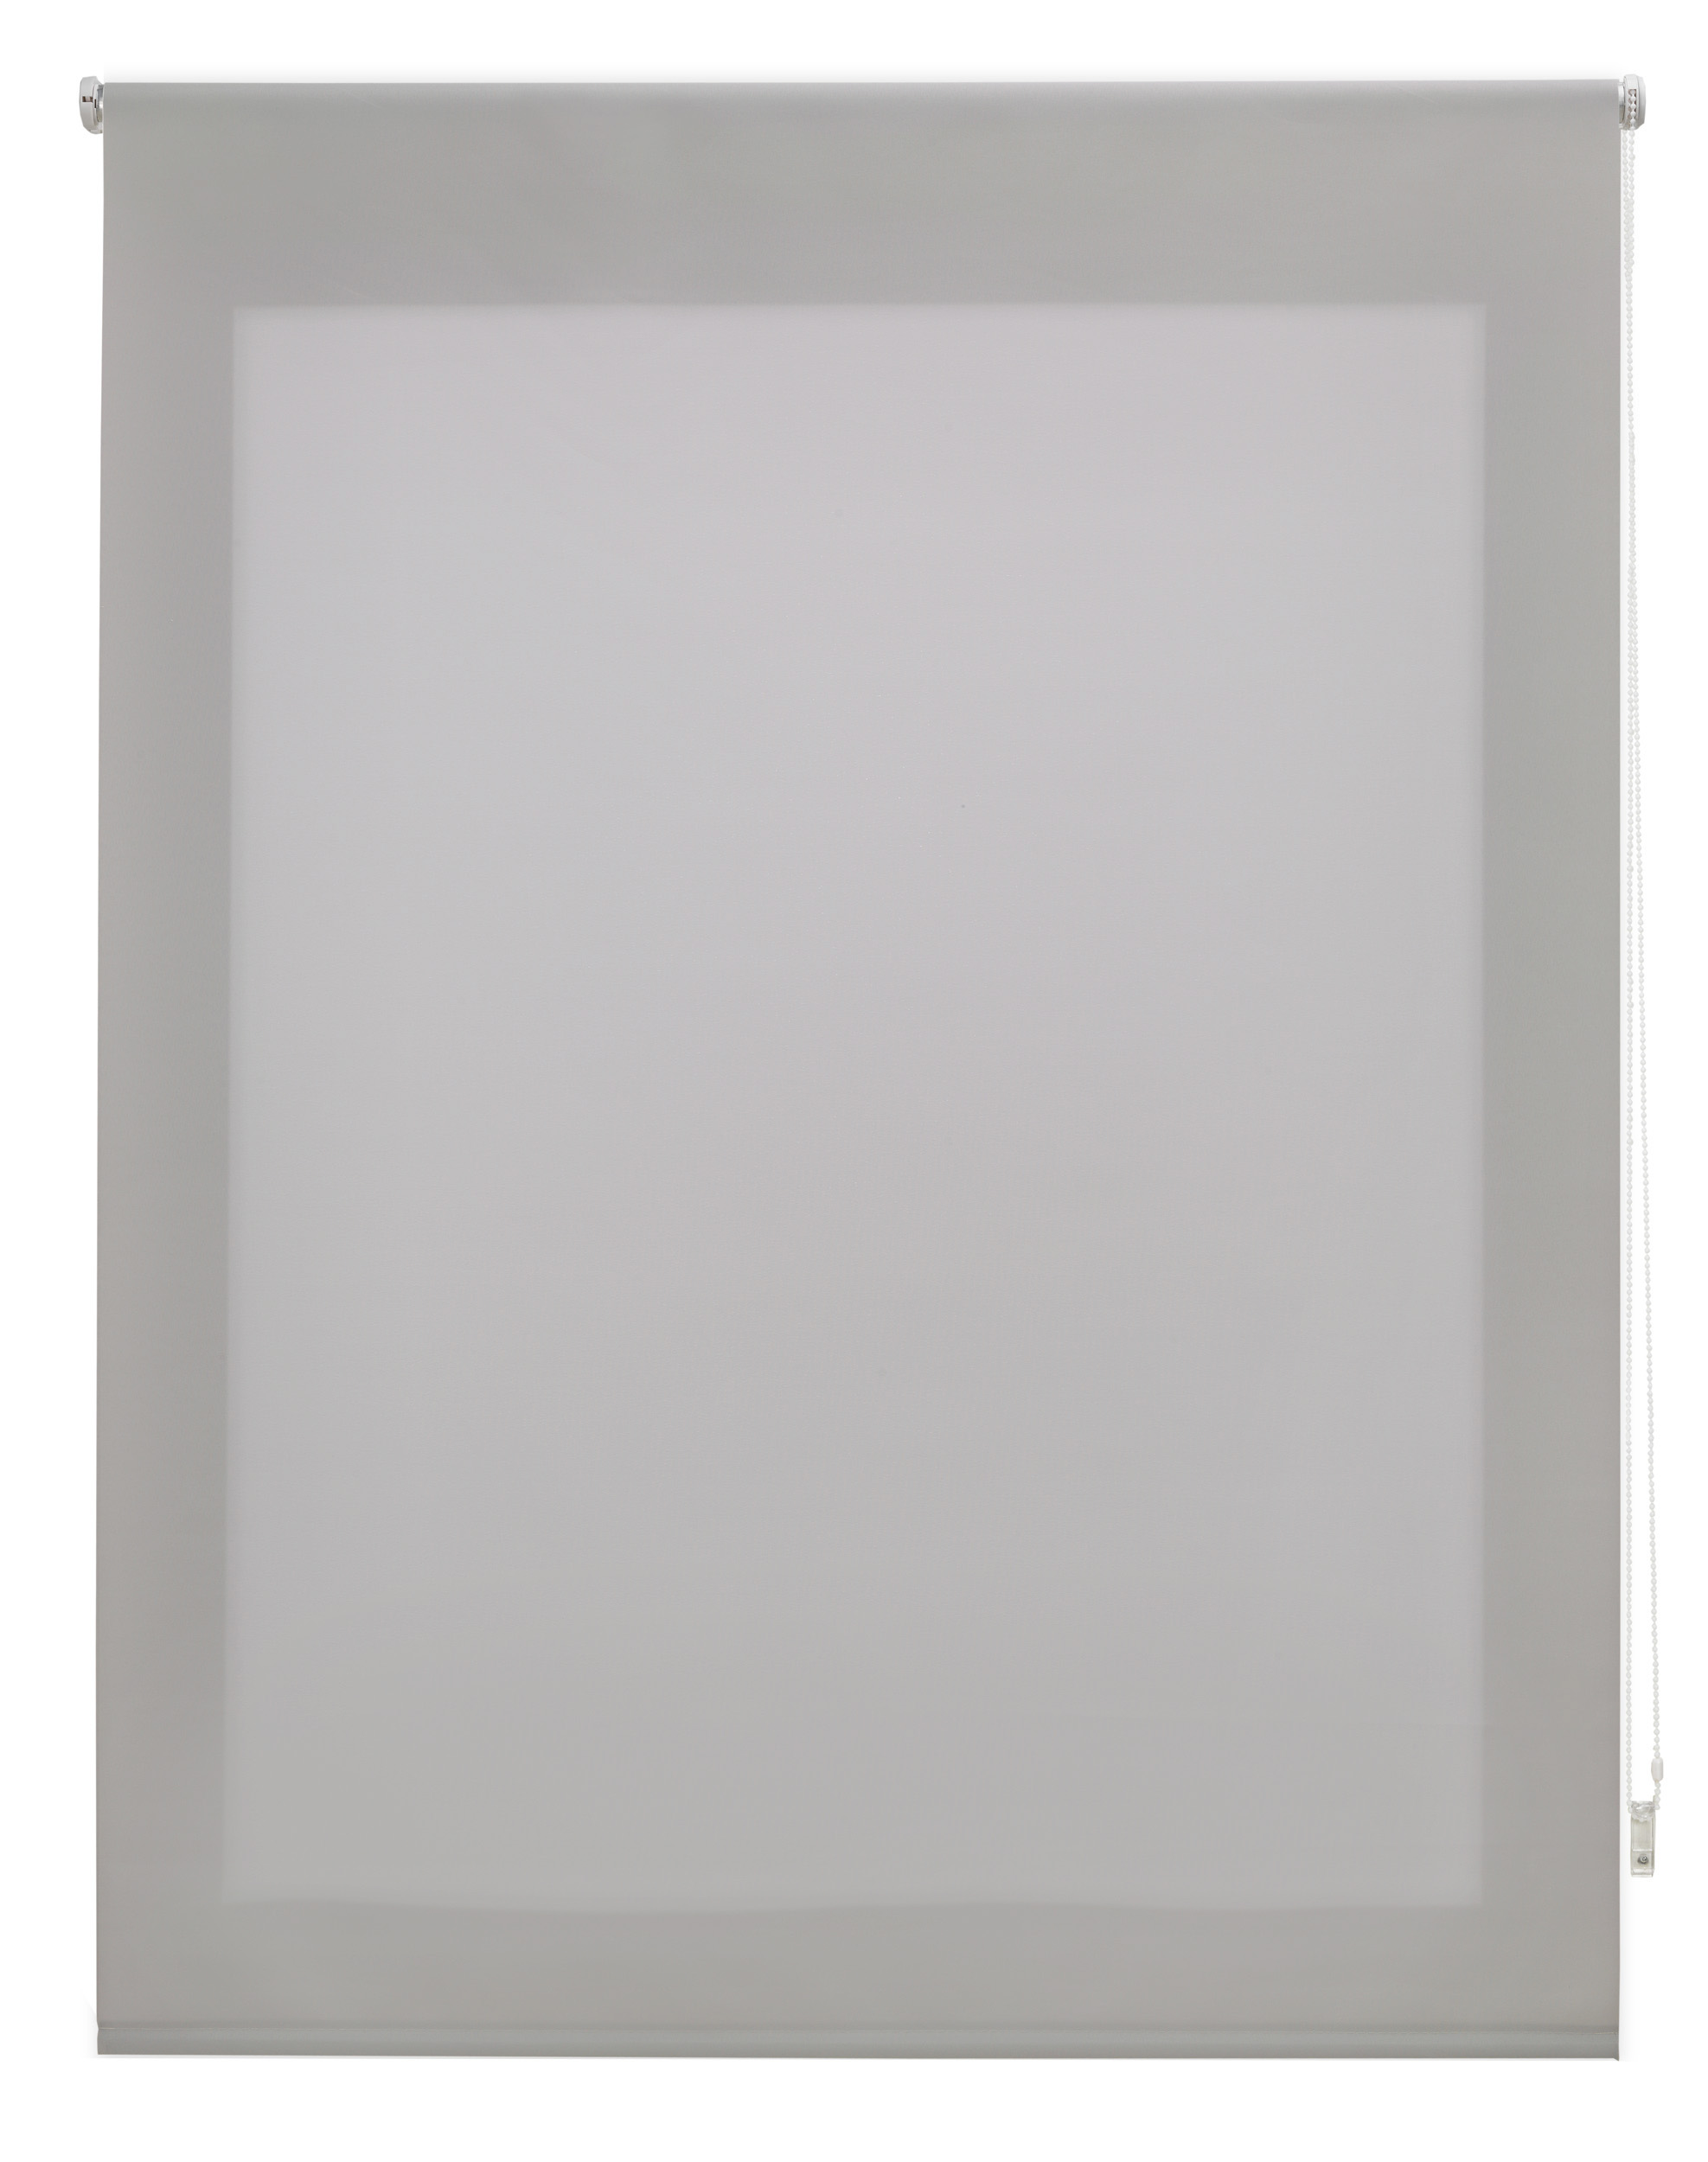 Blindecor Ara Premium | Estor liso translúcido de alta calidad - Piedra,  200 x 190 cm (Ancho por Alto). Tamaño de la Tela 197 x 185 cm . Estores  para